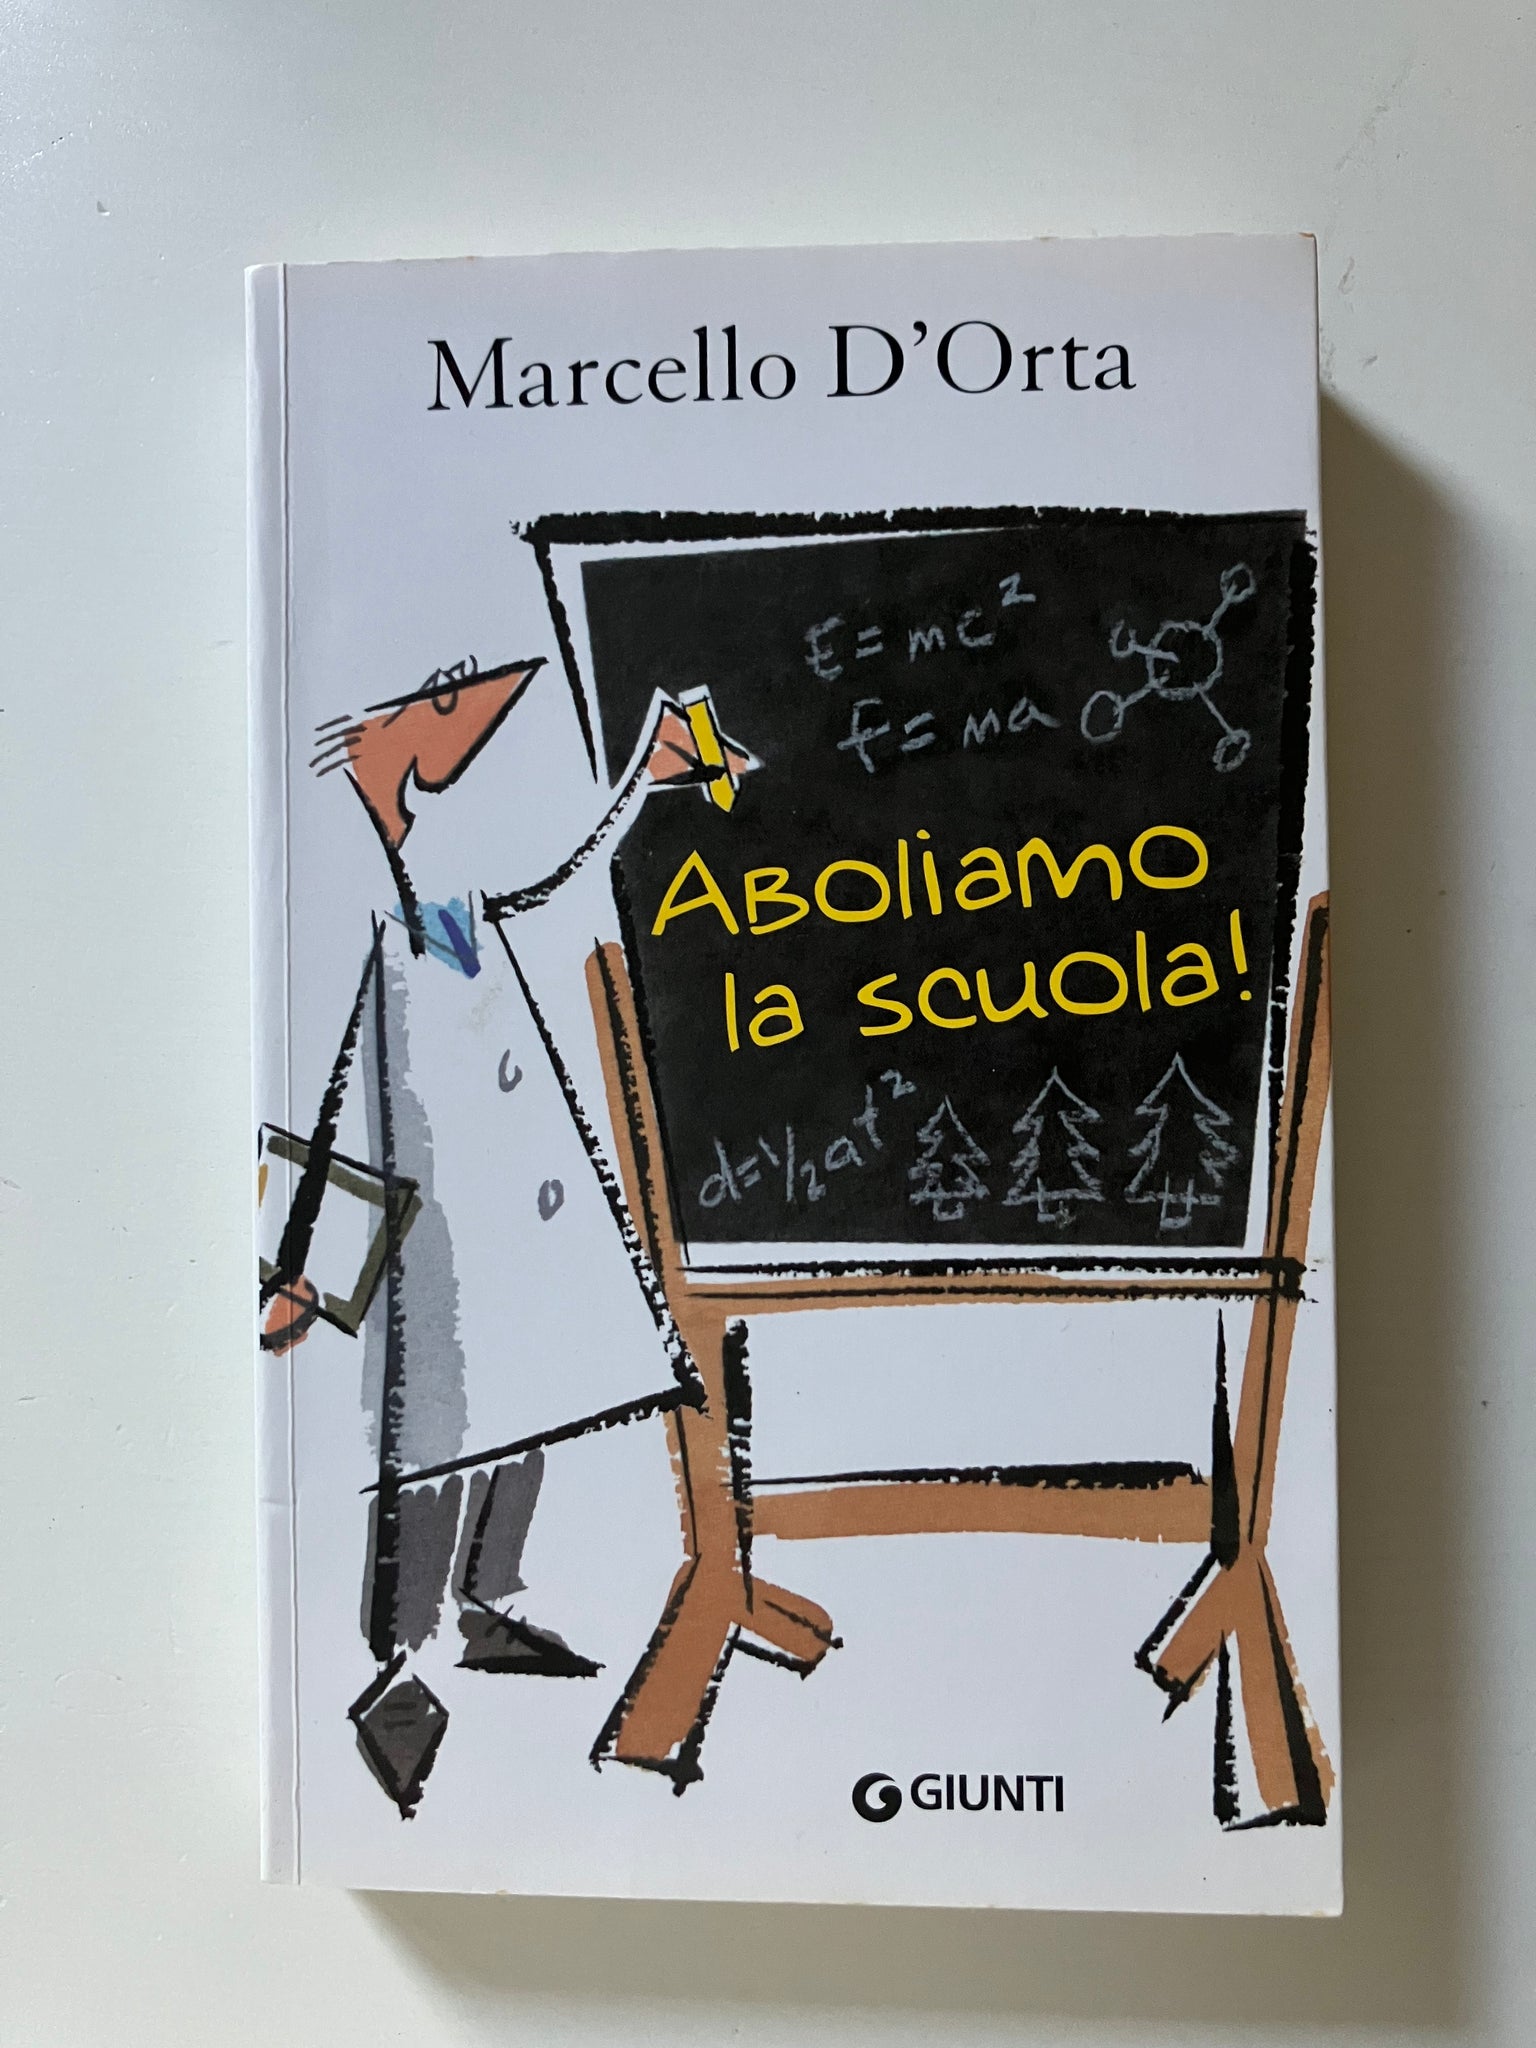 Marcello D'Orta - Aboliamo la scuola